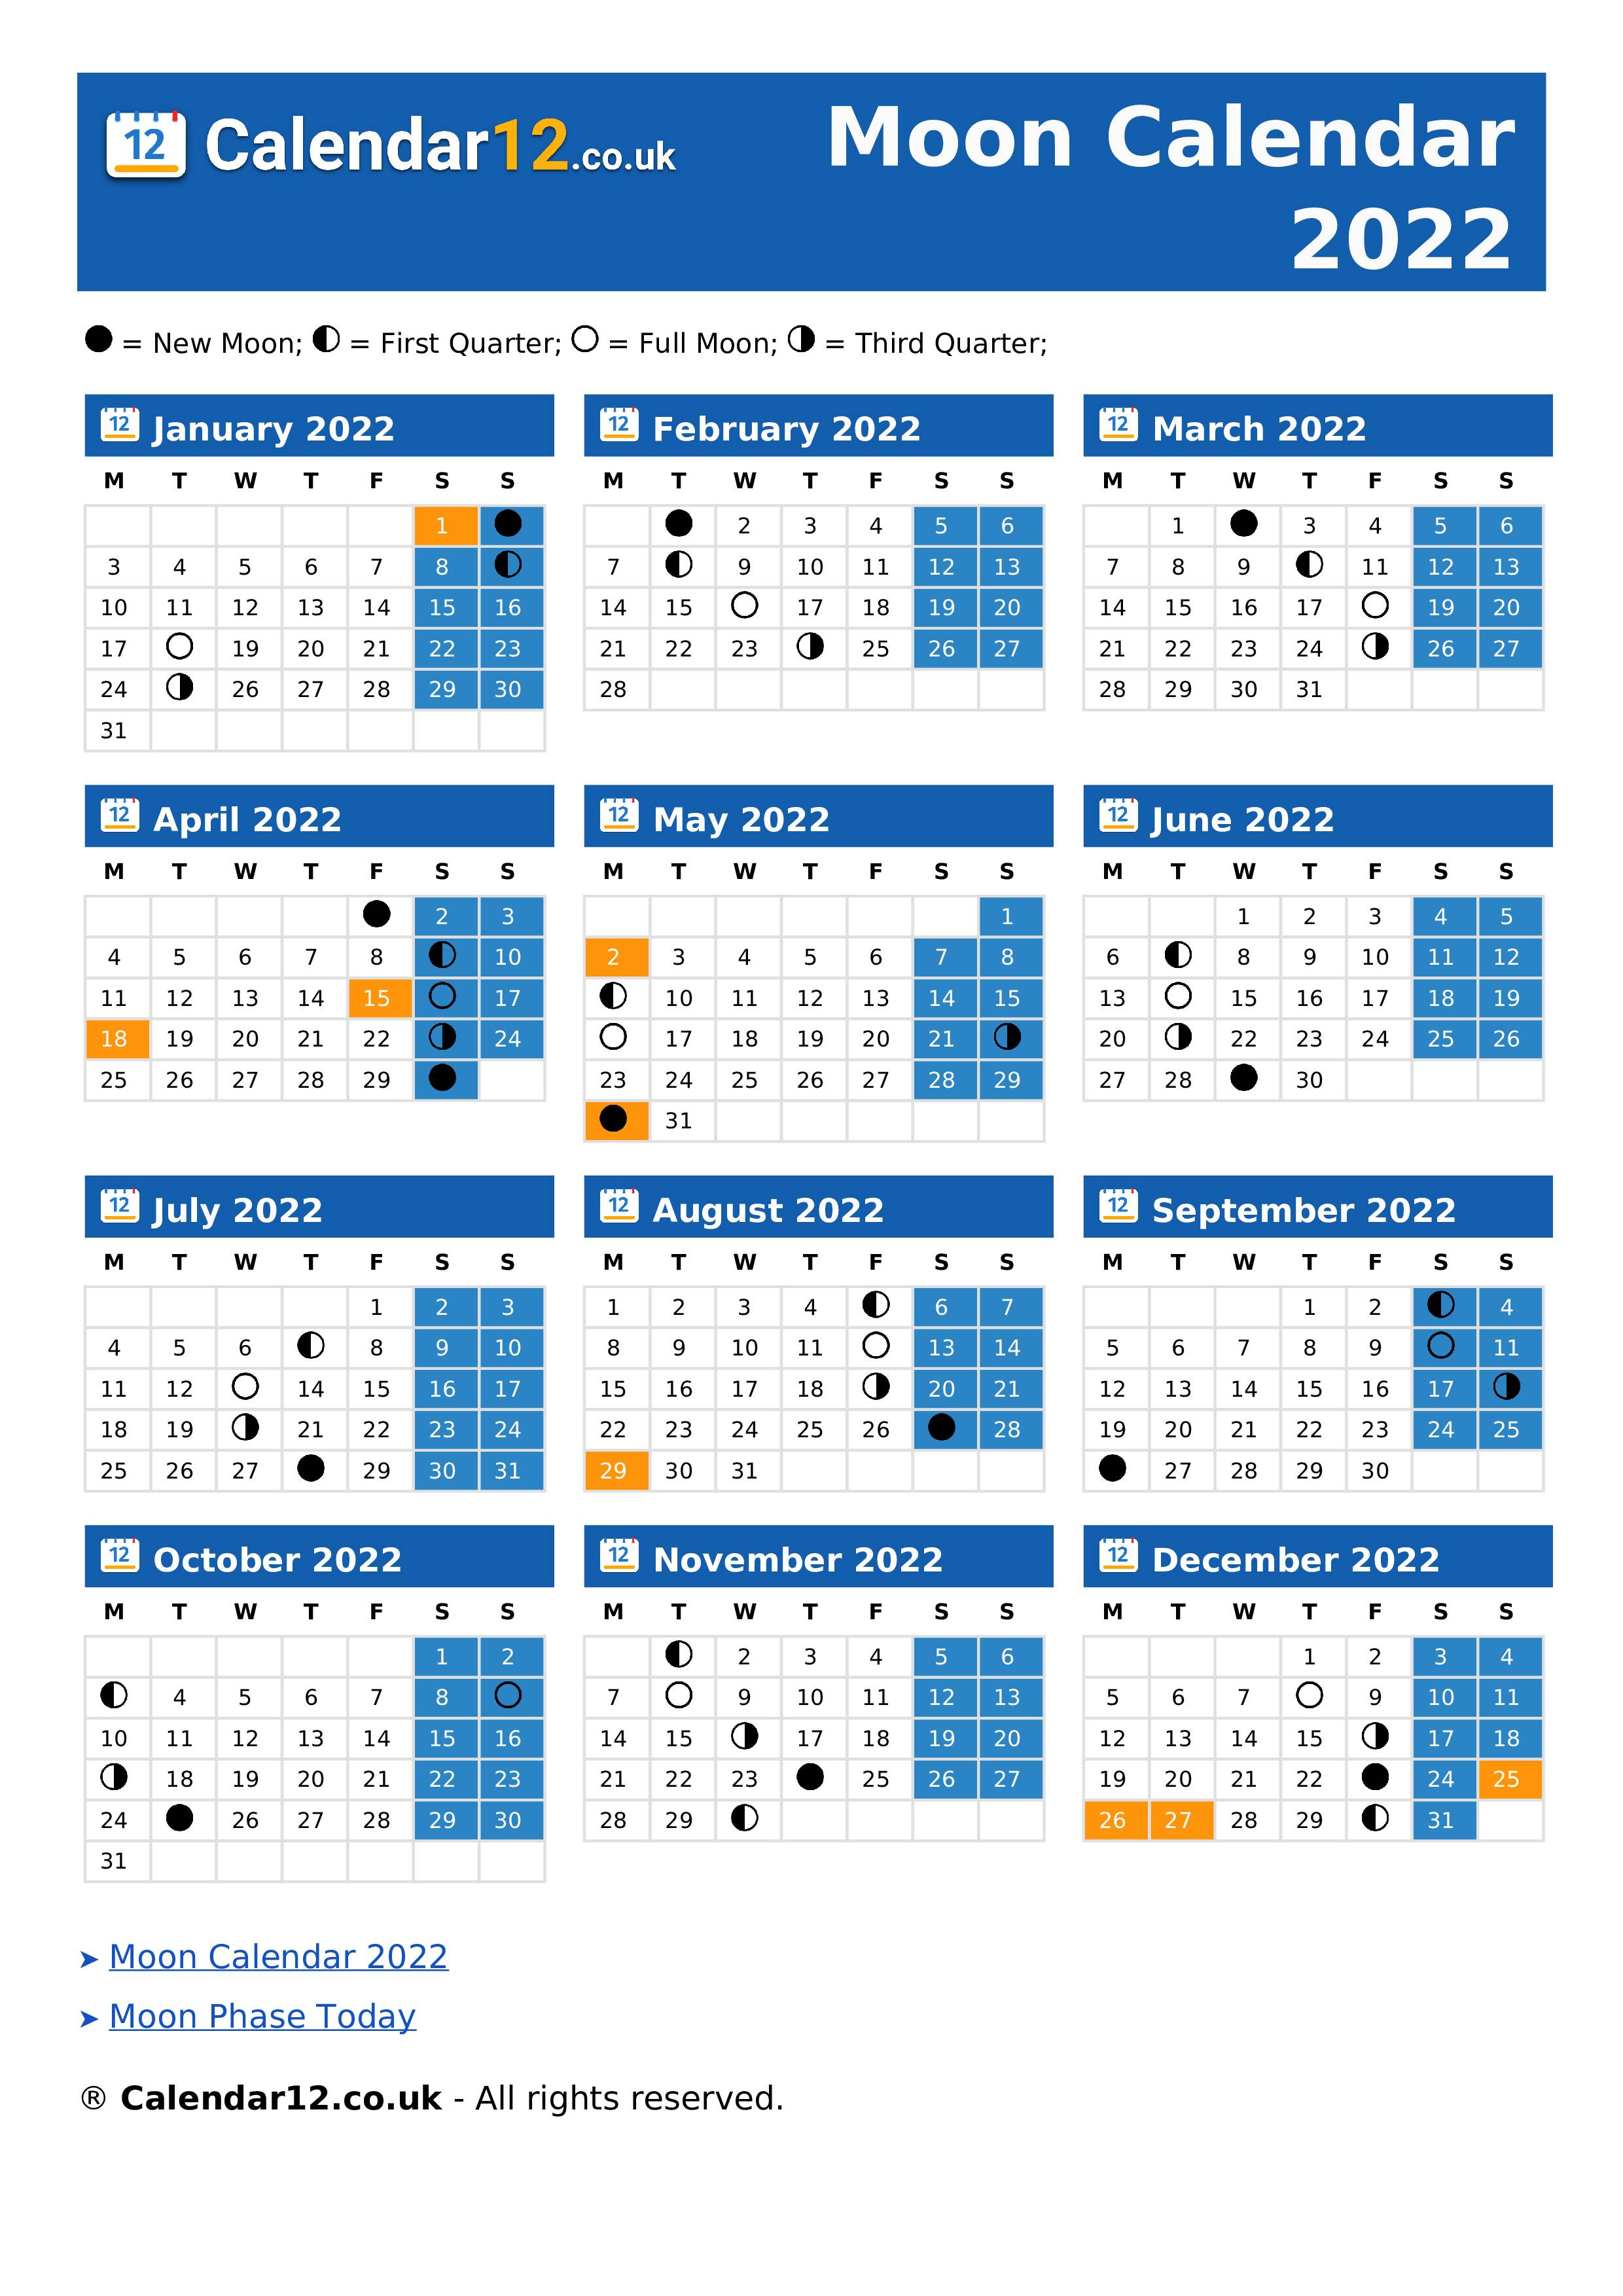 Lunar Calendar June 2022 Moon Calendar June 2022 ⬅️ — Calendar12.Co.uk